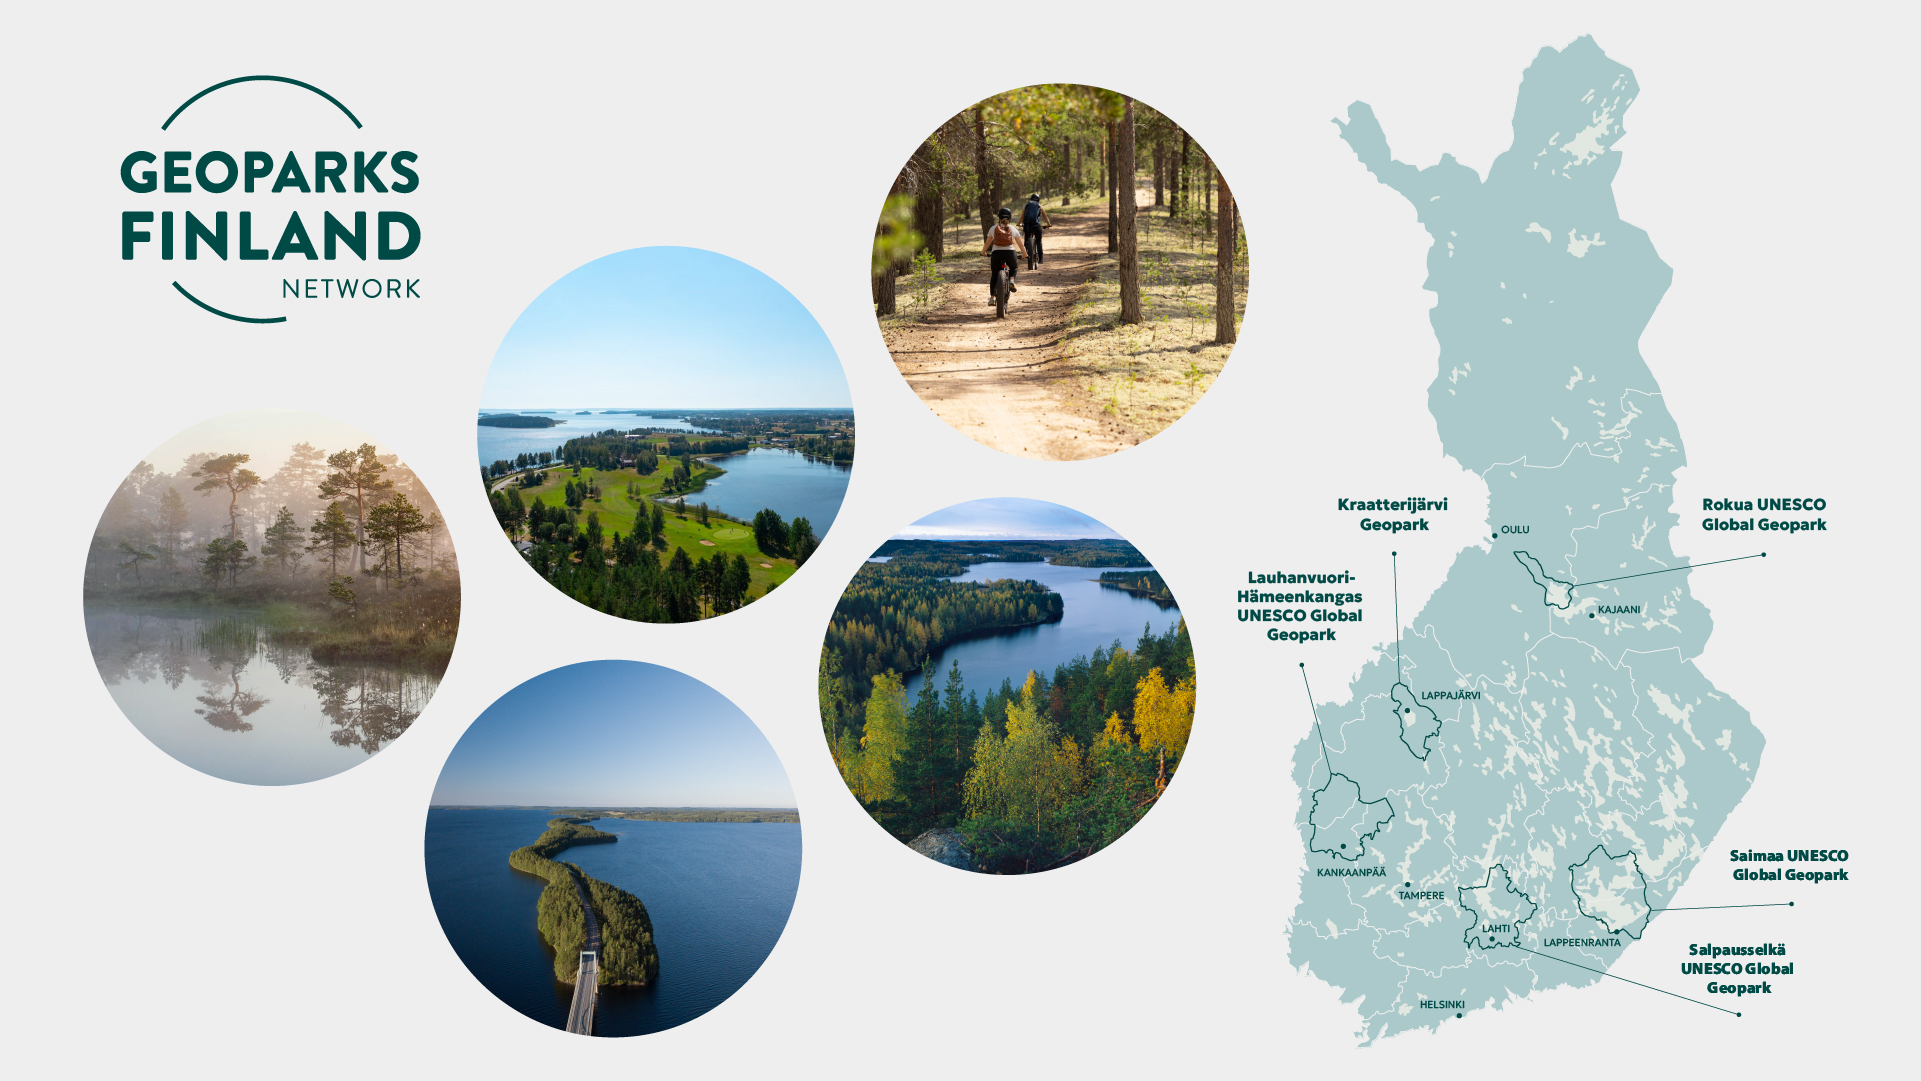 Suomen kartta, jossa näkyy kaikki Suomen Geoparkit, mukana valokuvat Geoparkeista ympyränmuotoisina